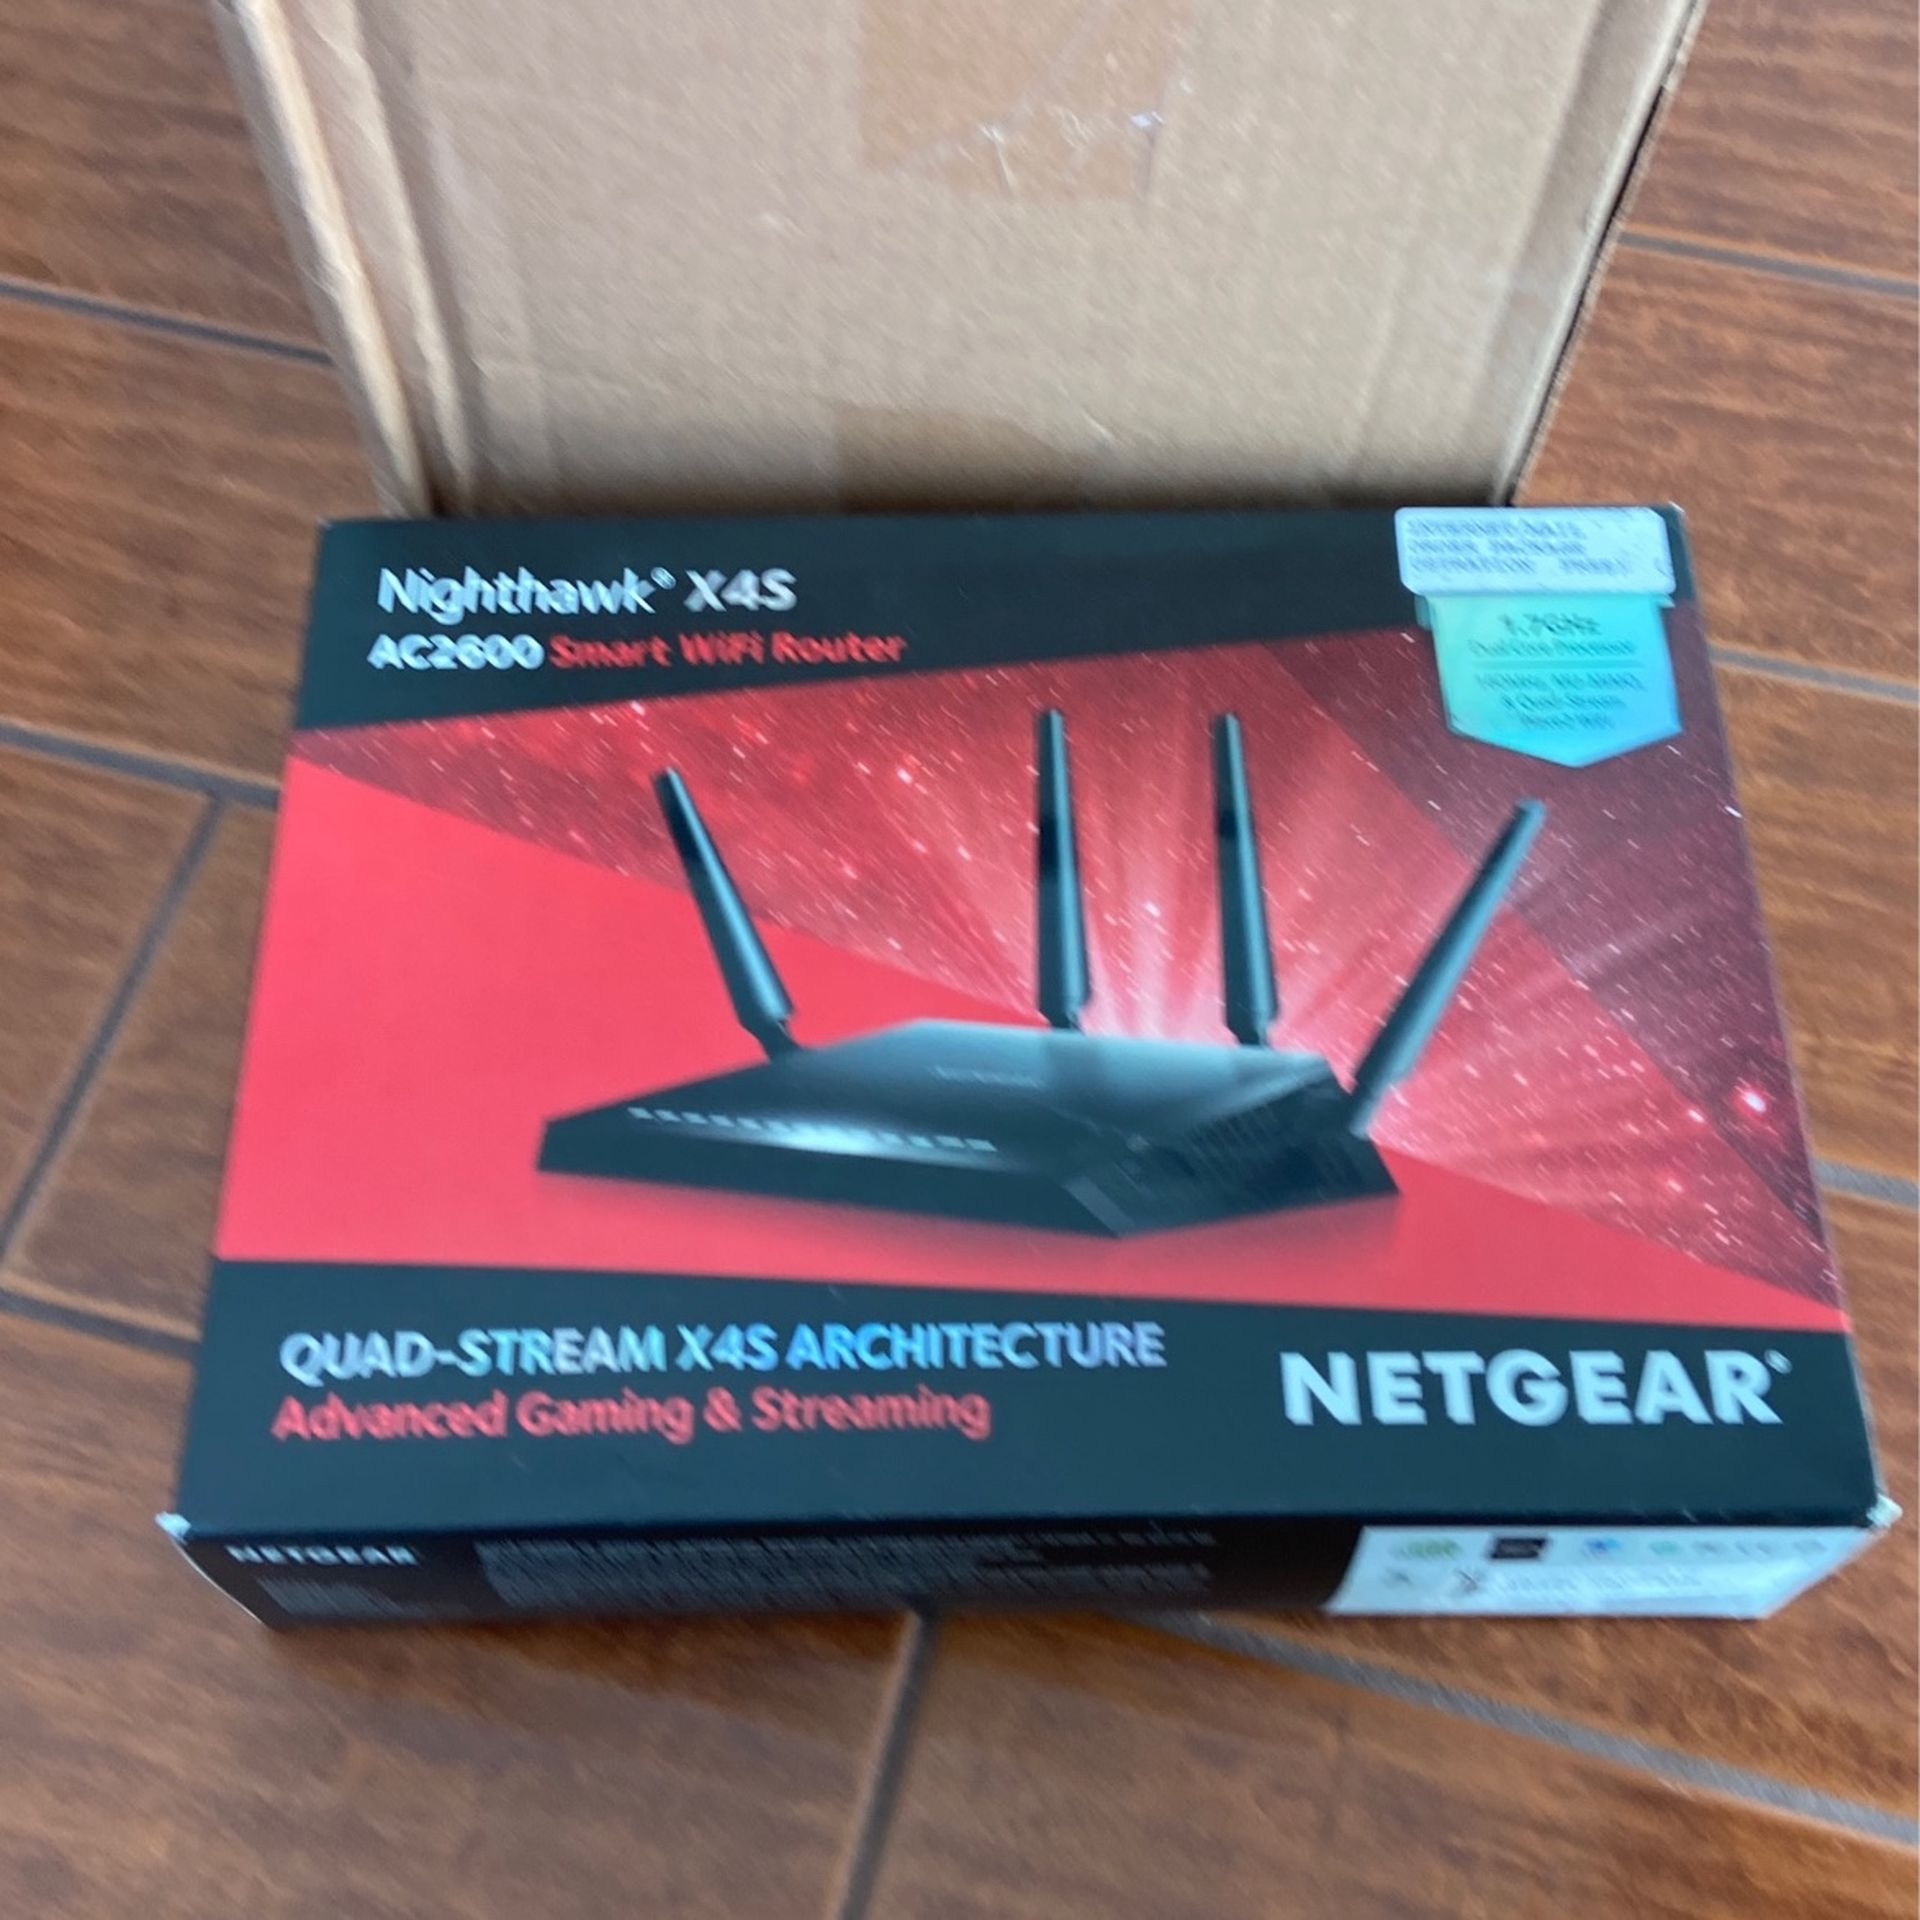 NETGEAR Nighthawk X4S Smart WiFi Router (R7800) - AC2600 Wireless Speed